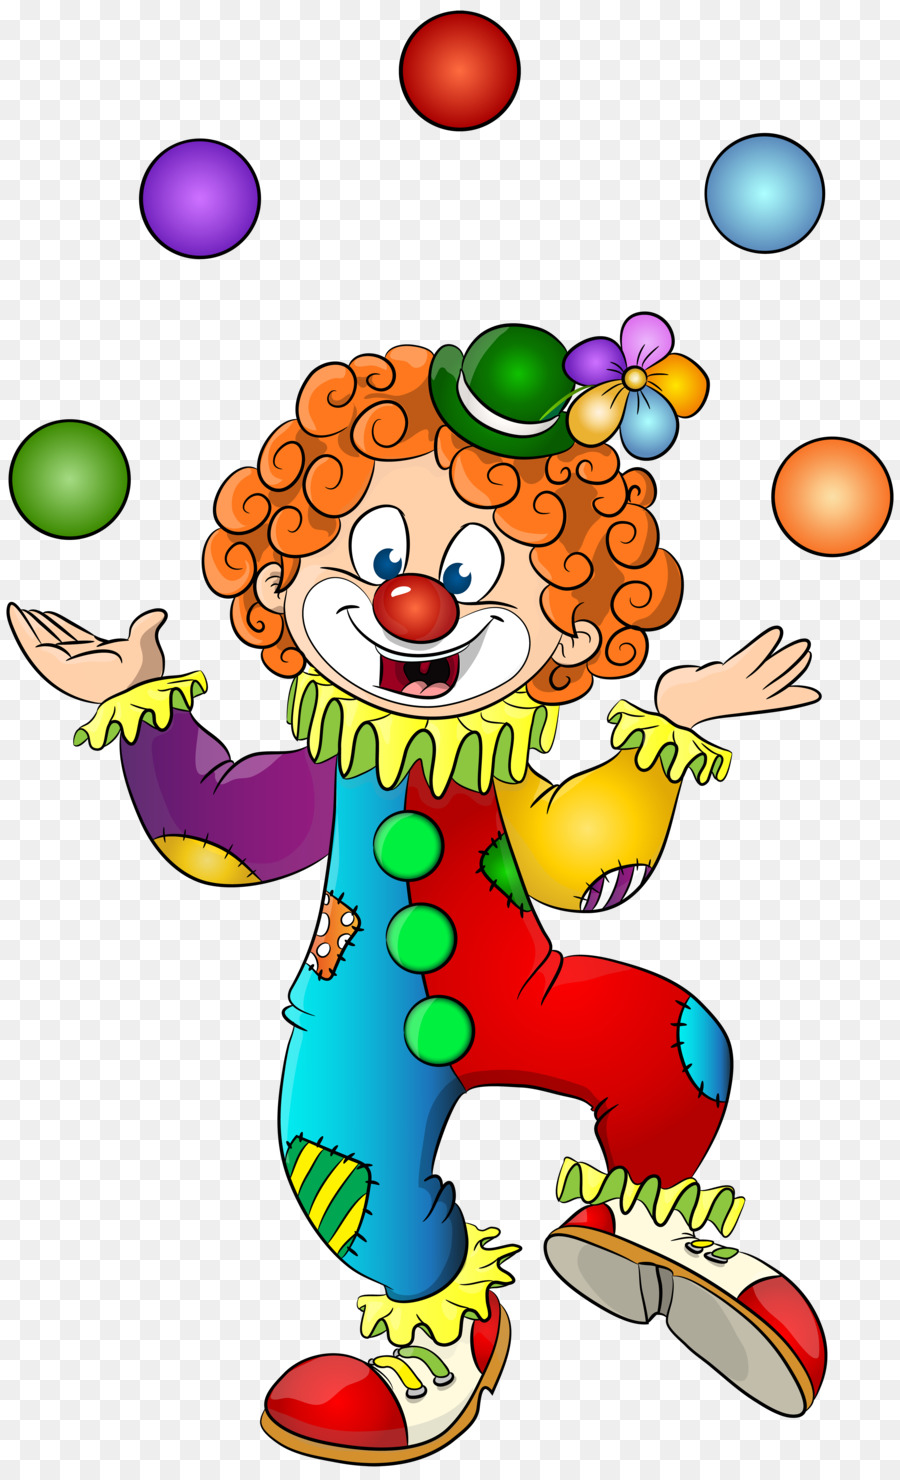 Clown malvagio Clip art - clown